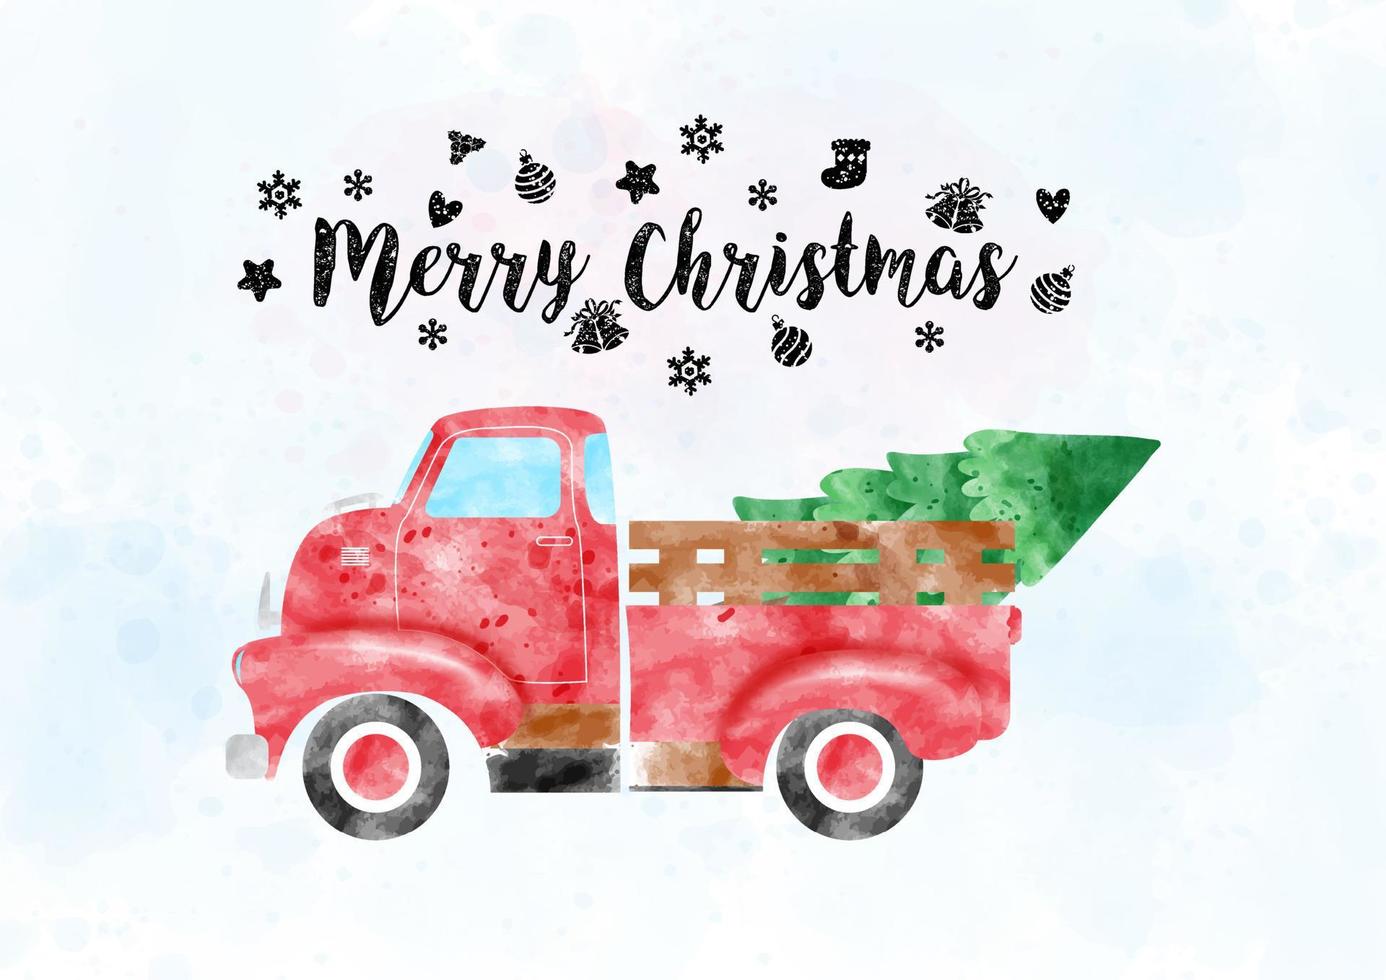 uma caminhonete retrô carregando pinheiro em estilo aquarela com letras de feliz natal e decorada com símbolos de natal em aquarela azul clara e fundo branco. vetor